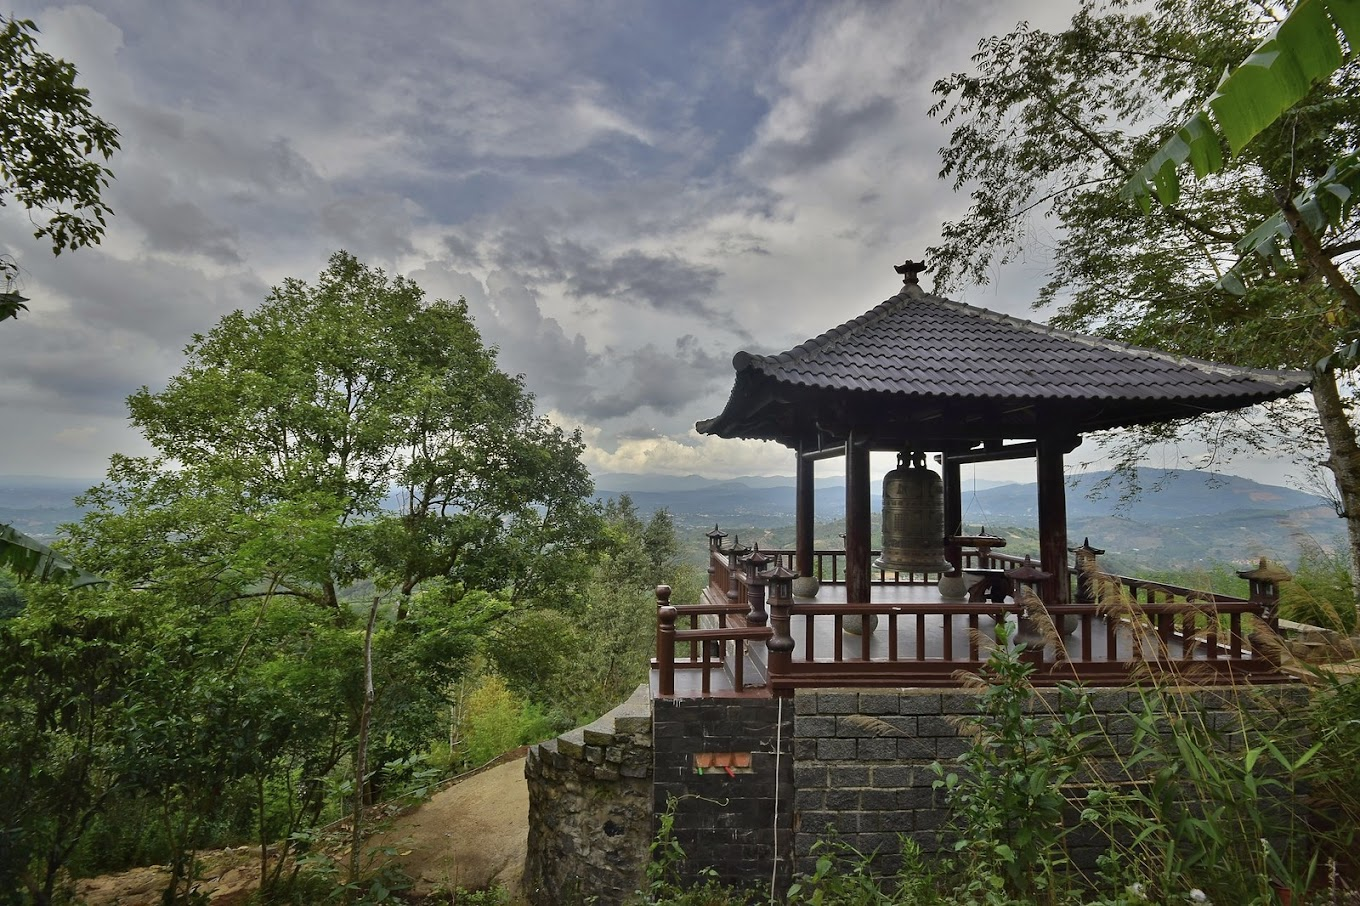 Chuông đồng nằm bên trong khuôn viên chùa Linh Quy Pháp Ấn